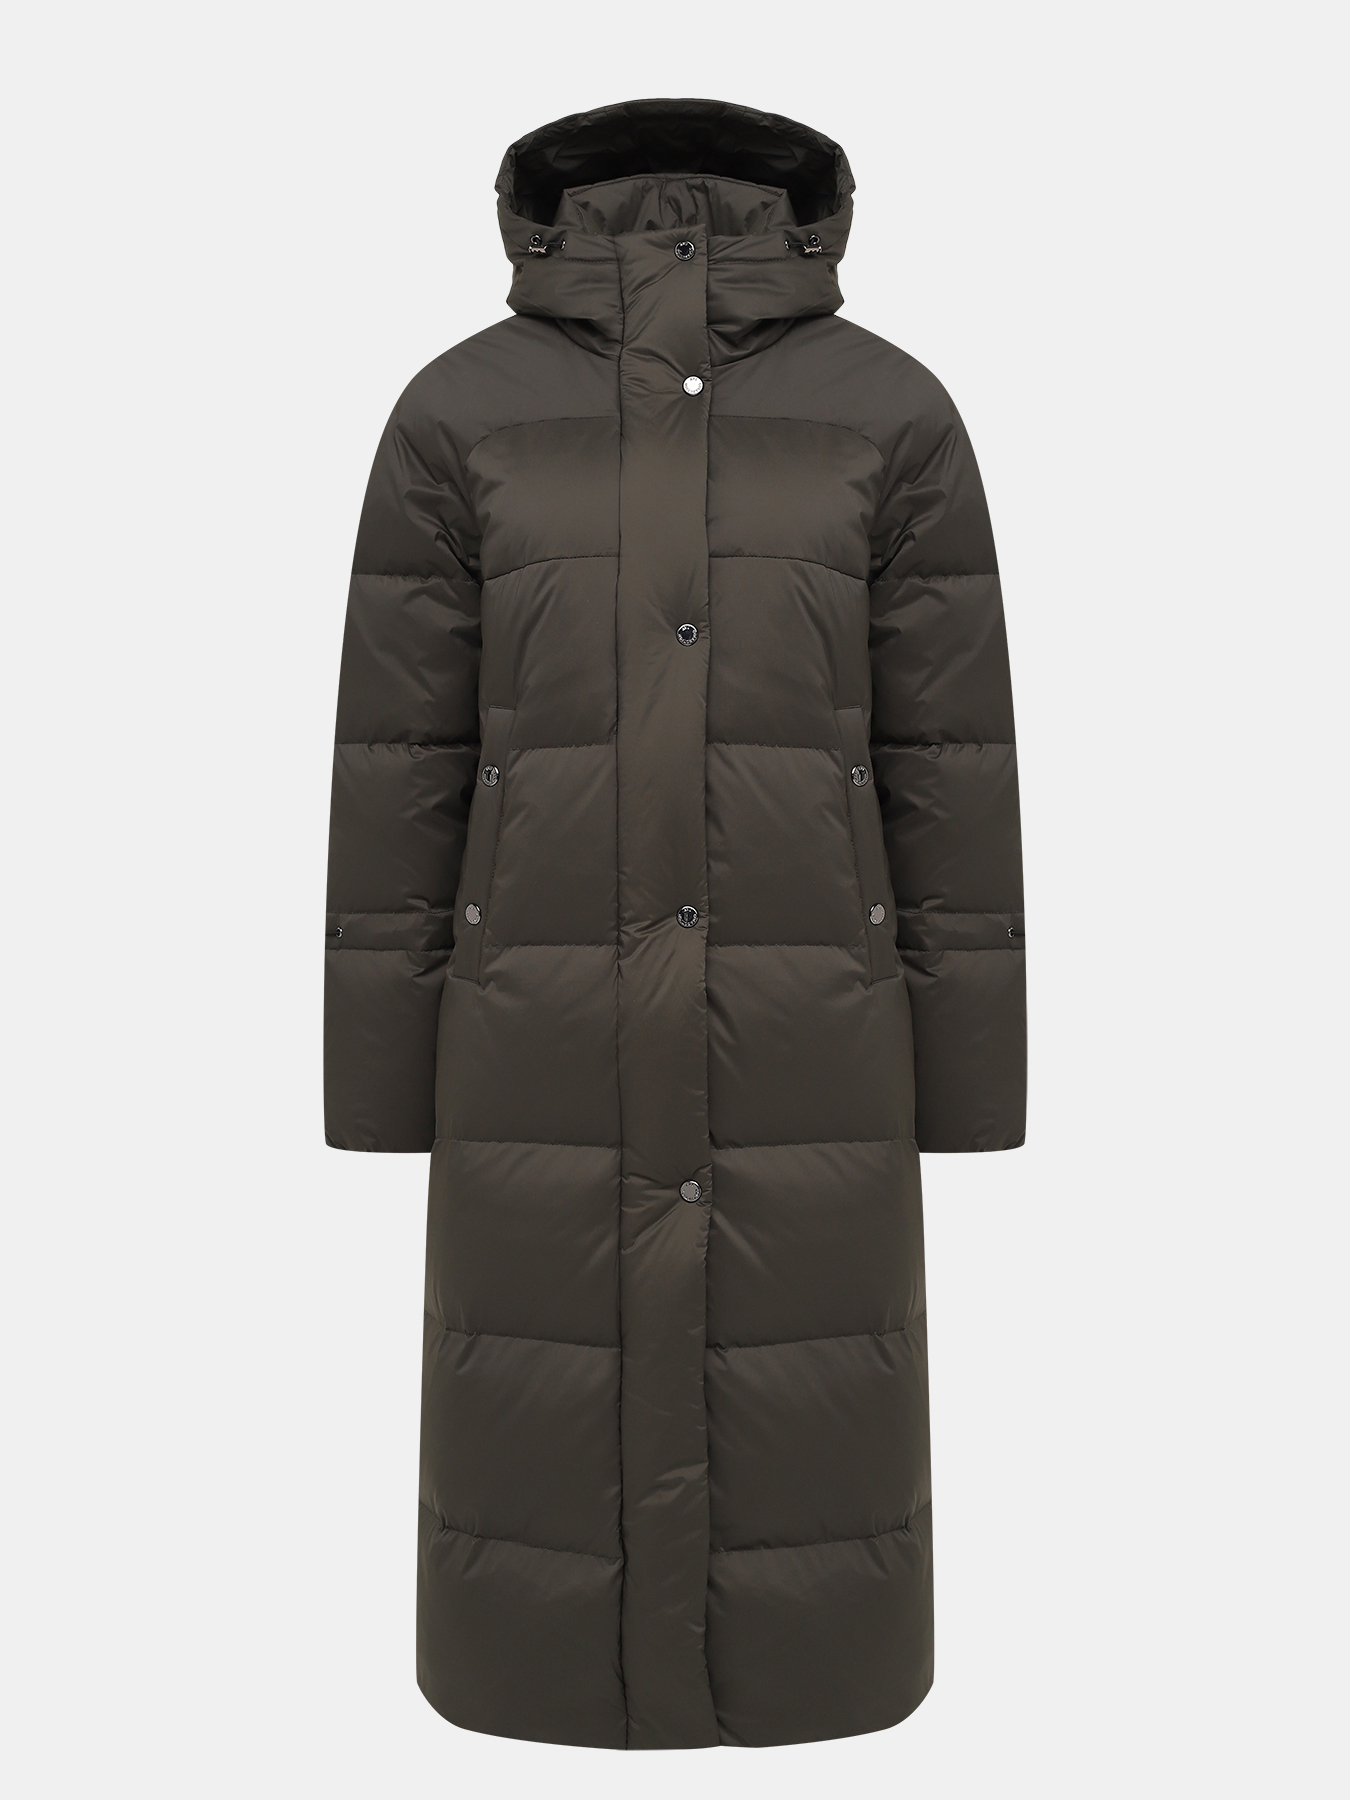 Пальто зимнее AVI 433638-022, цвет хаки, размер 48